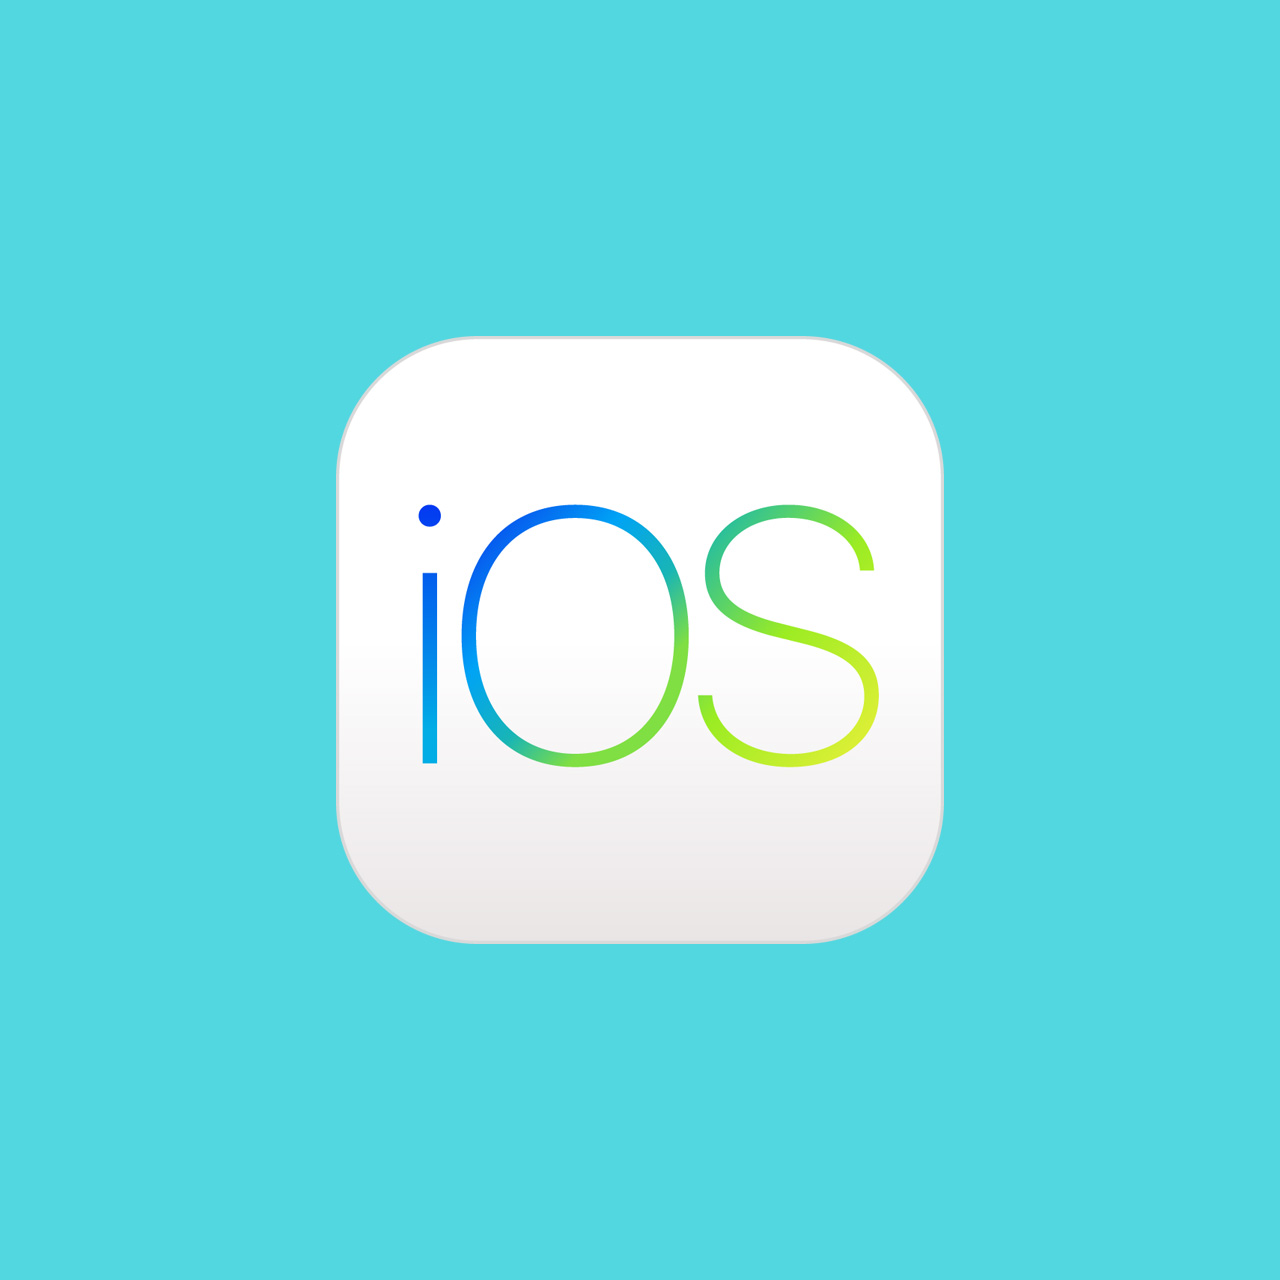 Logo operativnog sustava iOS i MacOS, plavozelena iOS slova na kvadratnoj bijeloj podlozi zaobljenih uglova. 